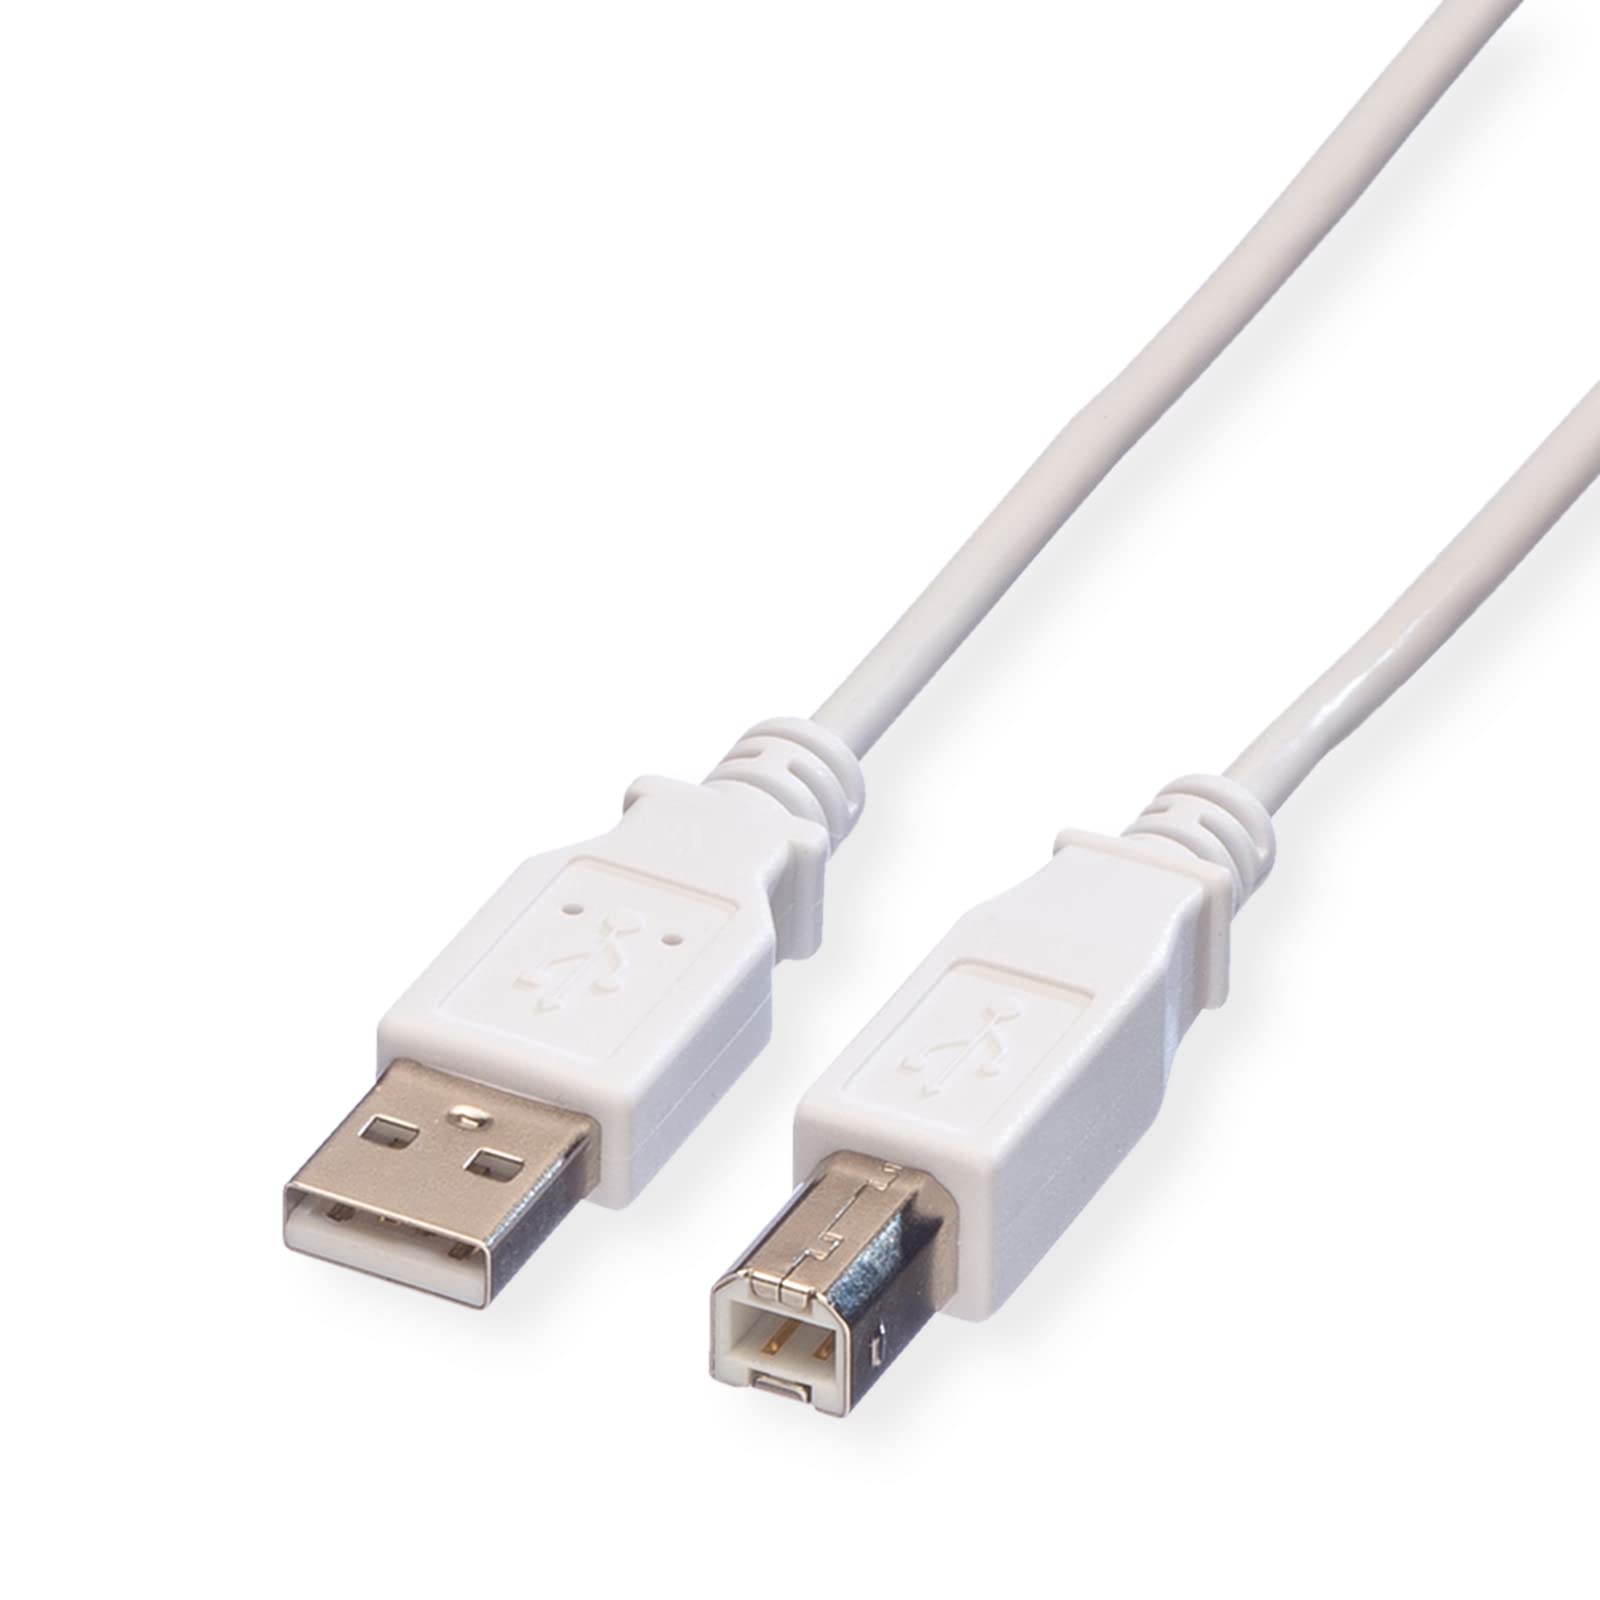 4.5 MT - ECONOMY USB